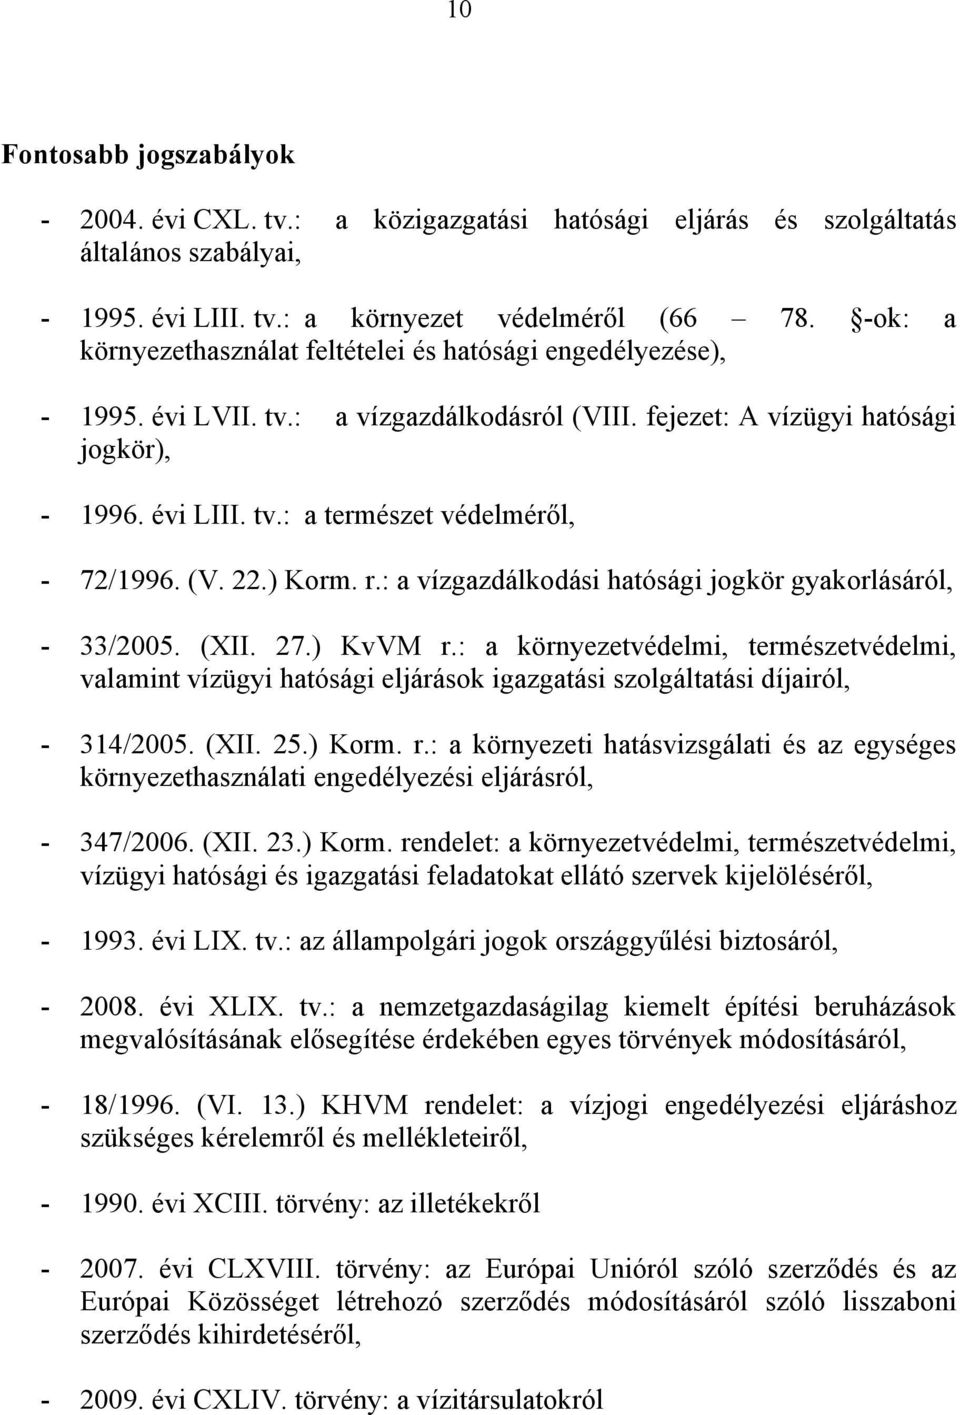 (V. 22.) Korm. r.: a vízgazdálkodási hatósági jogkör gyakorlásáról, - 33/2005. (XII. 27.) KvVM r.